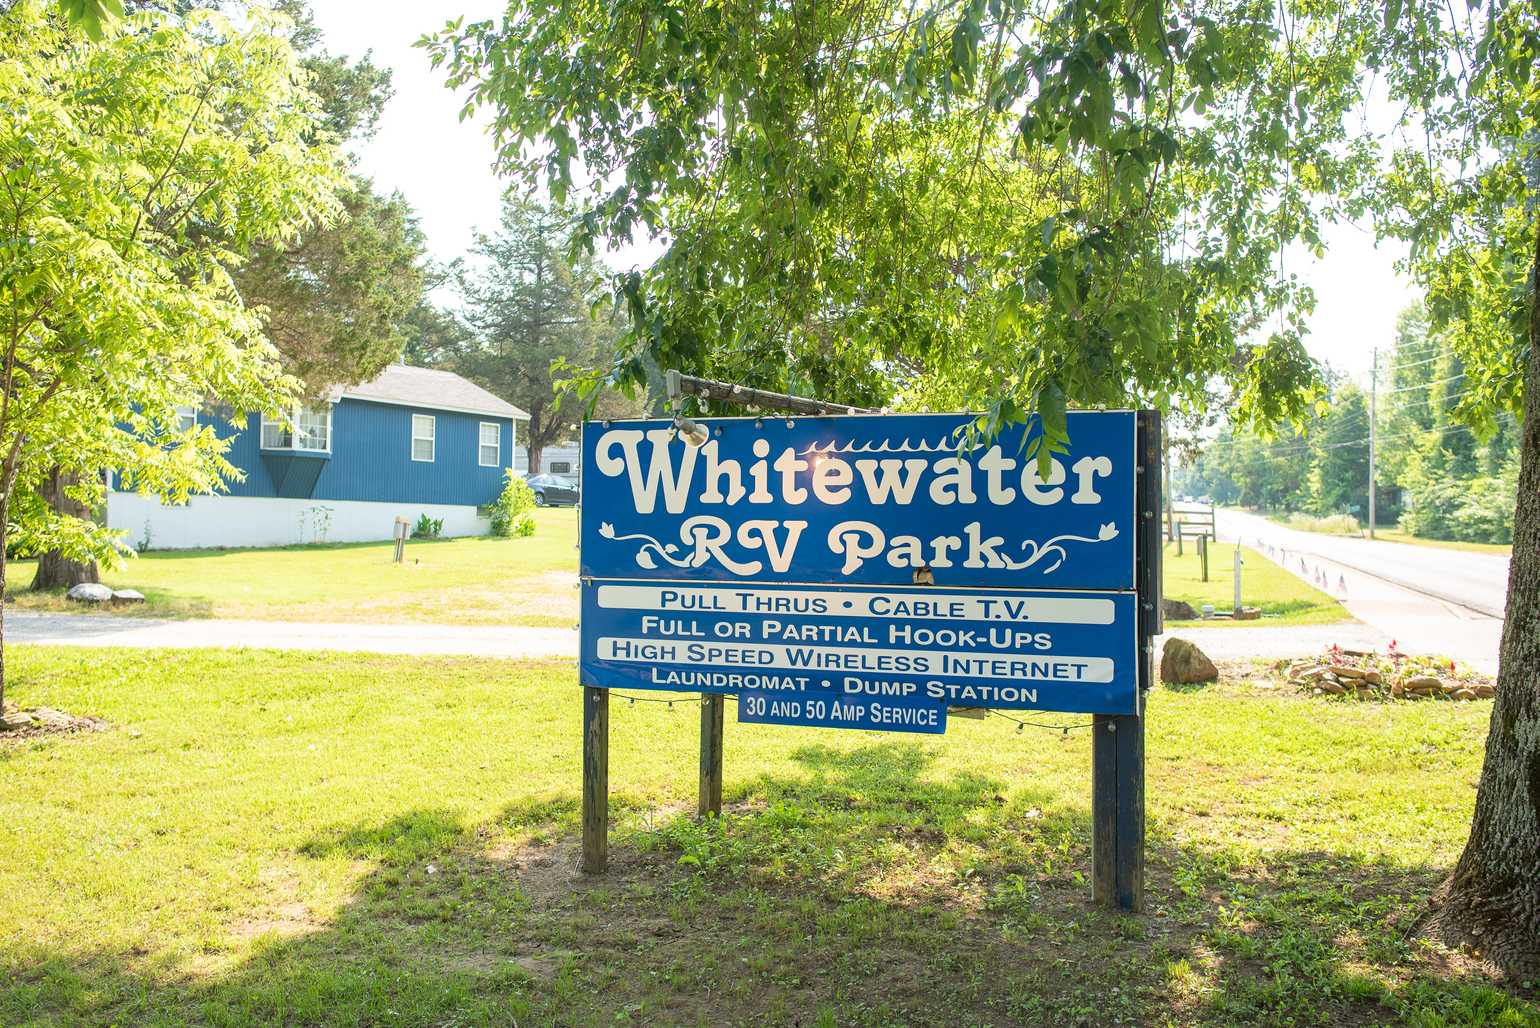 Whitewater RV Park Mountain View, Arkansas Campspot